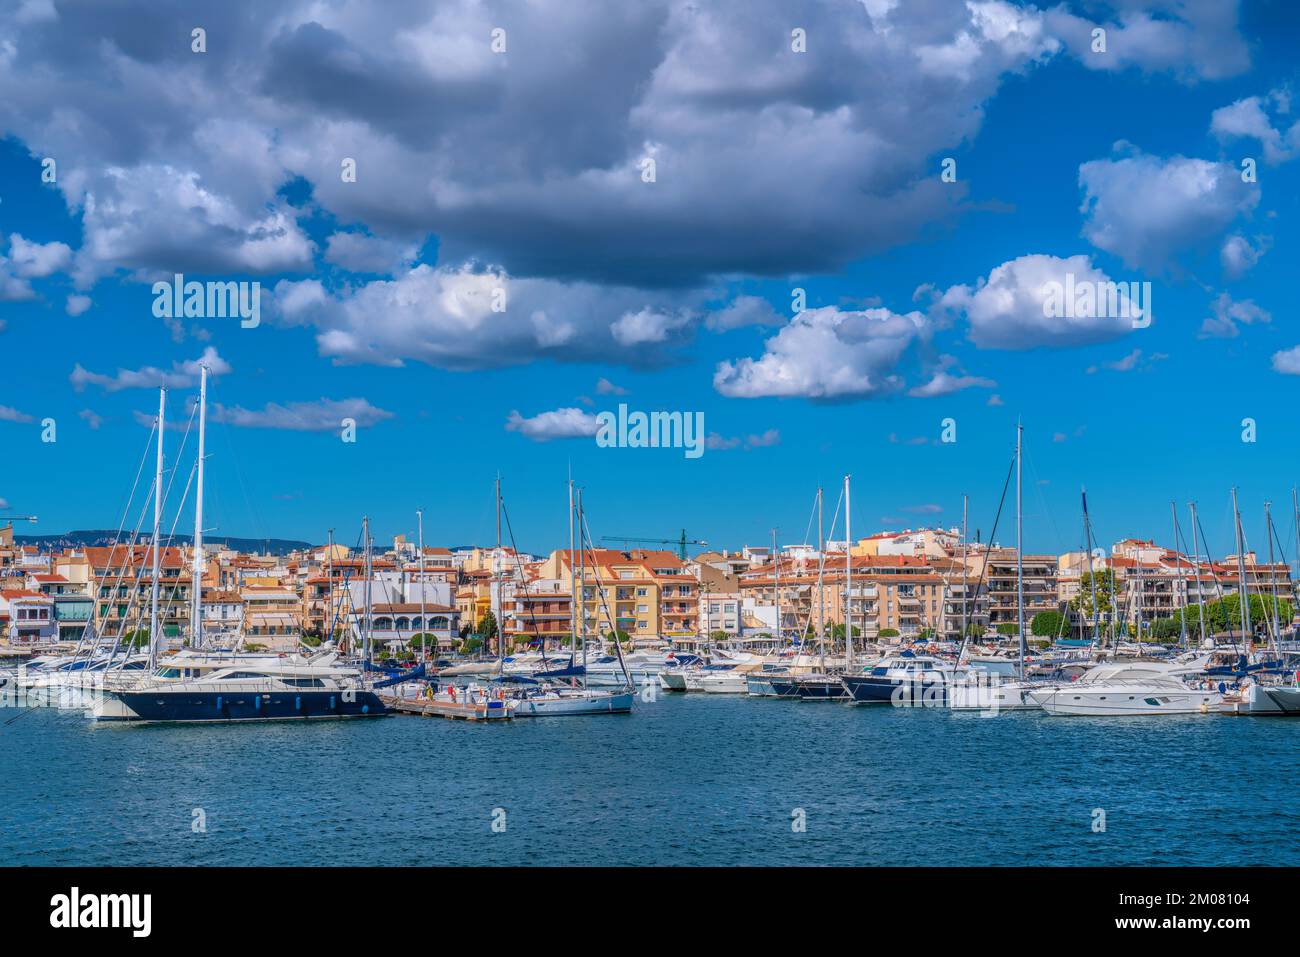 Cambrils Spain yachts and boats in marina Catalonia Tarragona Province blue Mediterranean sea and sky Stock Photo